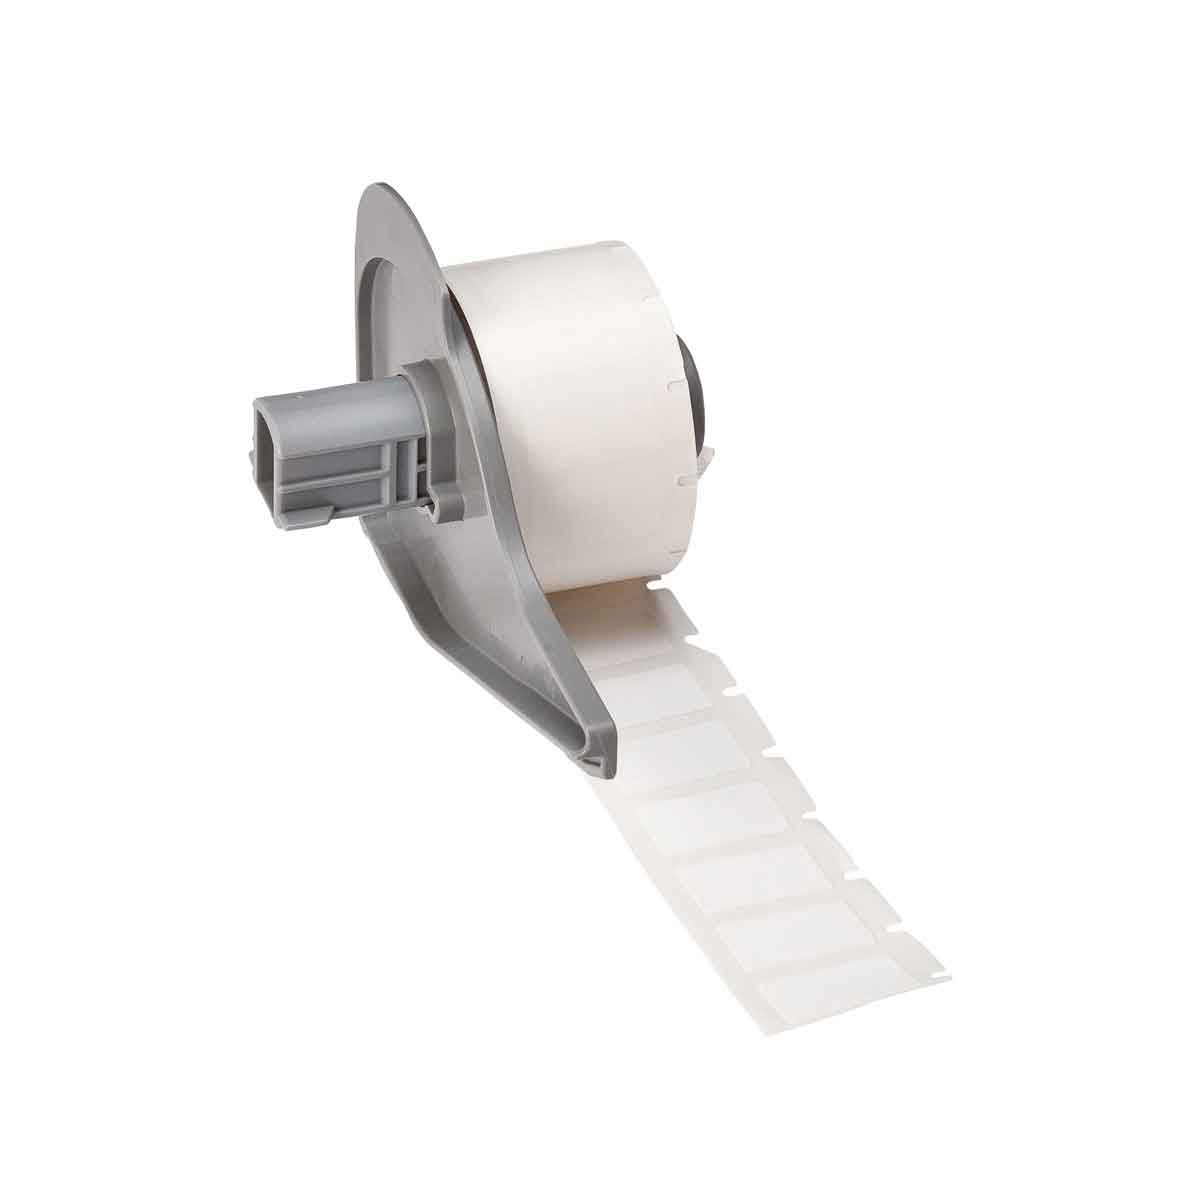 Etiquettes en tissu nylon pour étiqueteuse BMP71